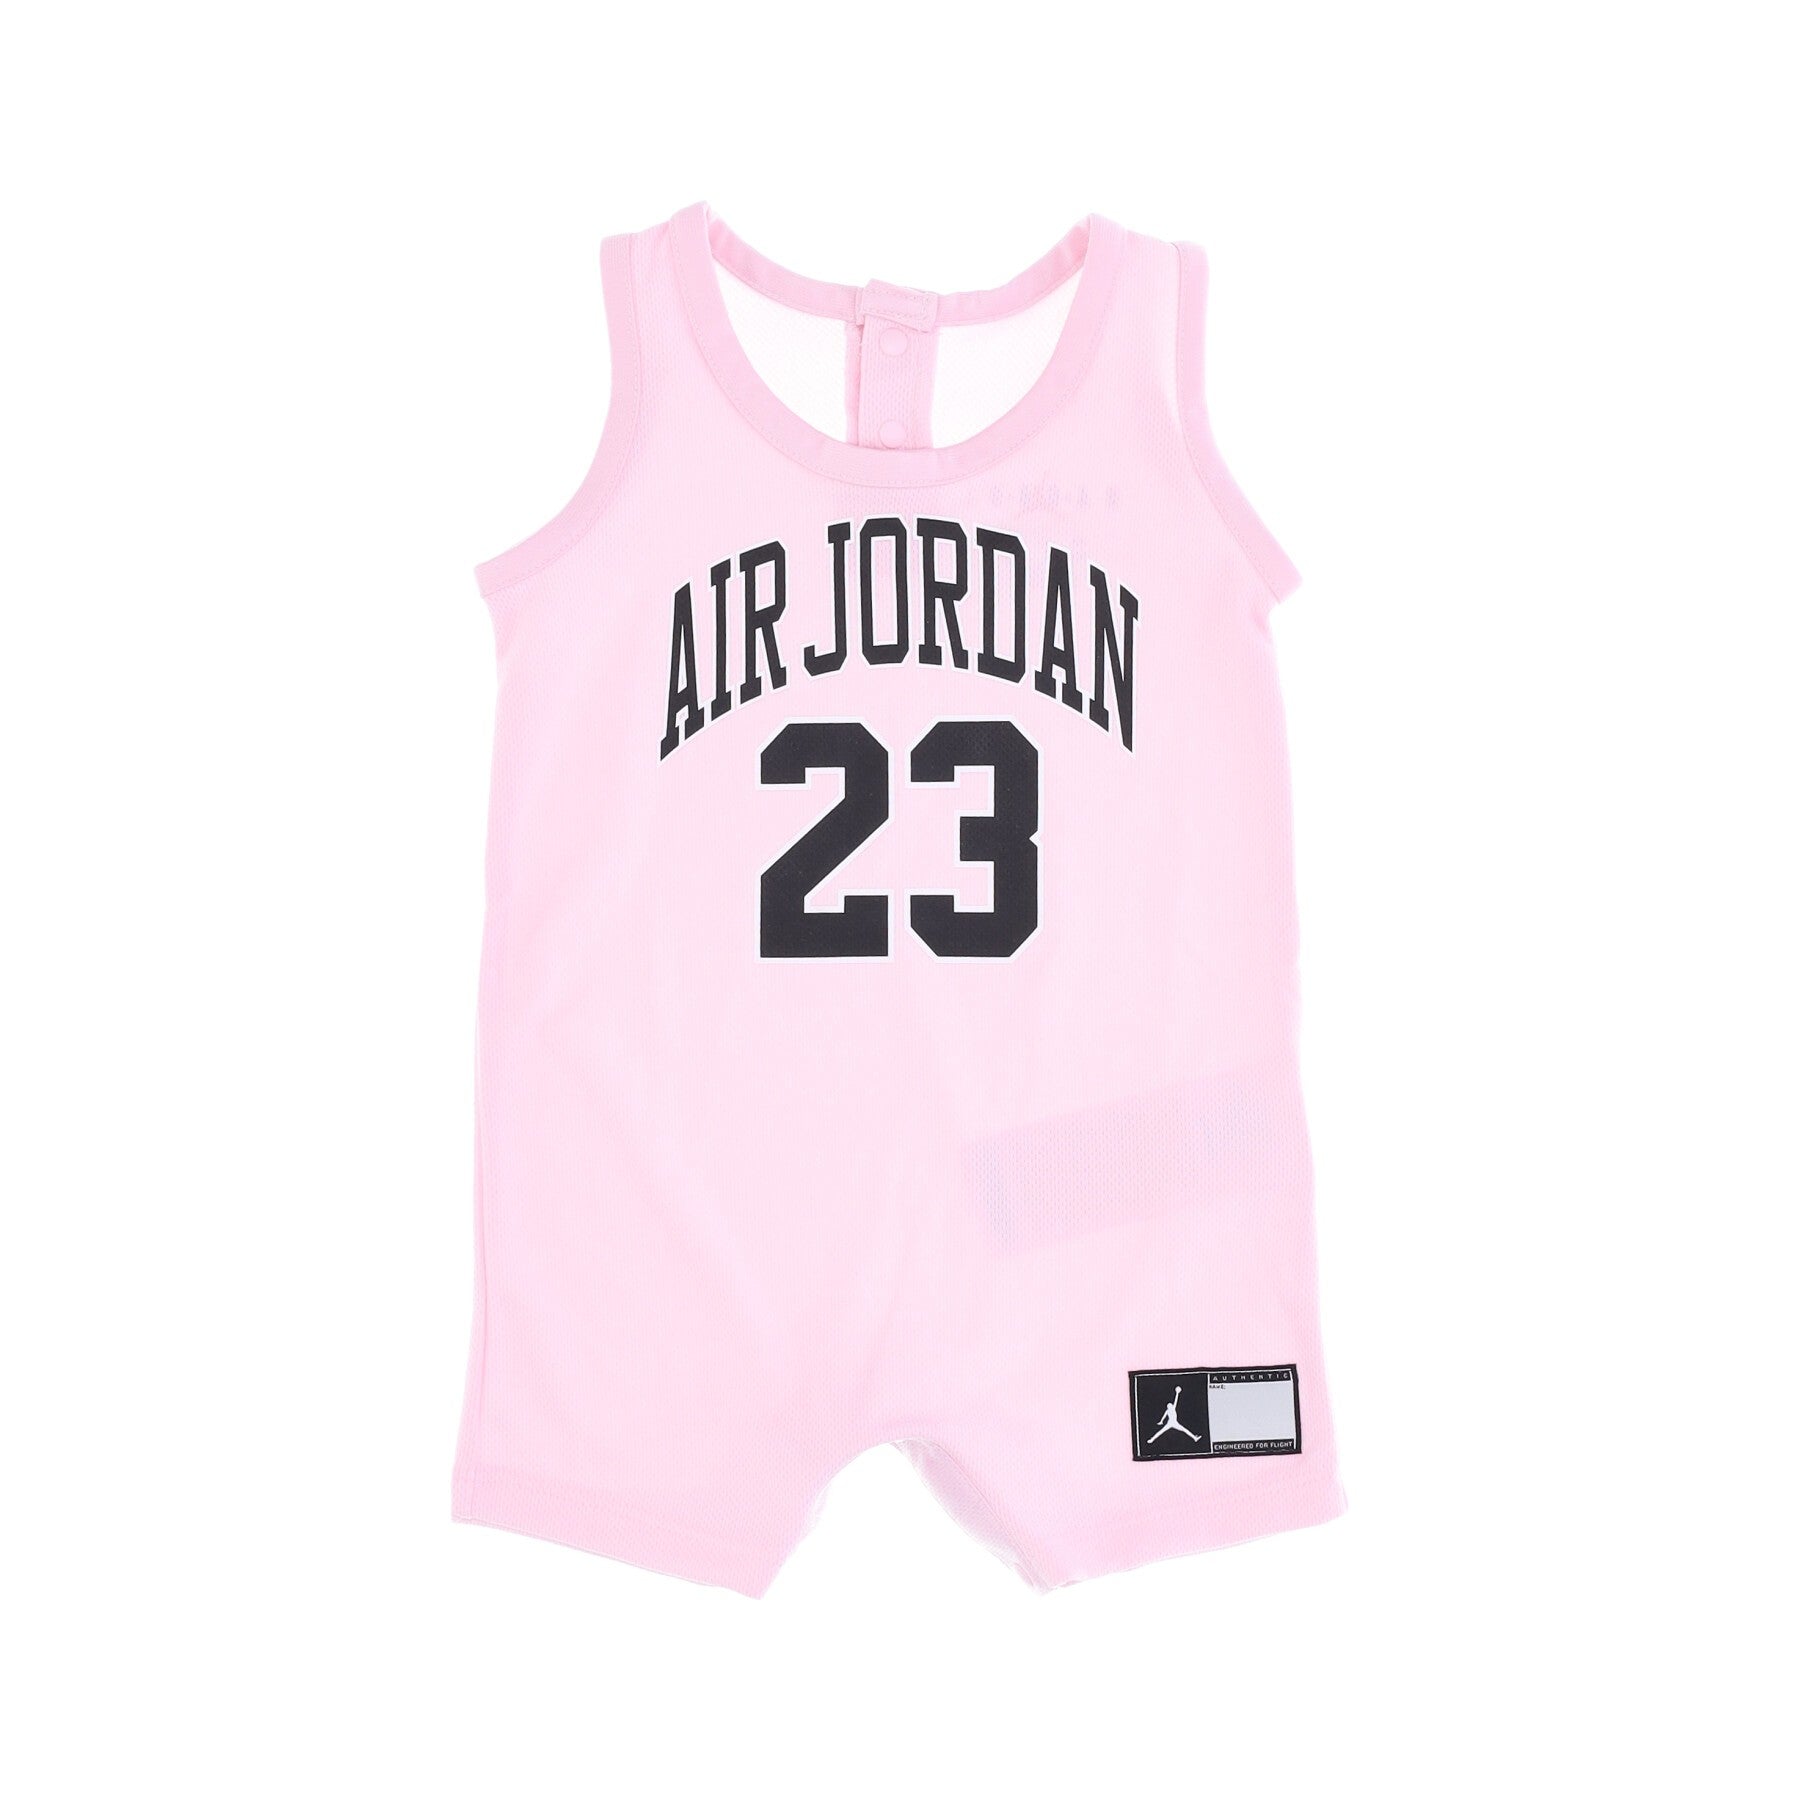 Body Neonato Hbr Jordan Jersey Romper Pink Foam